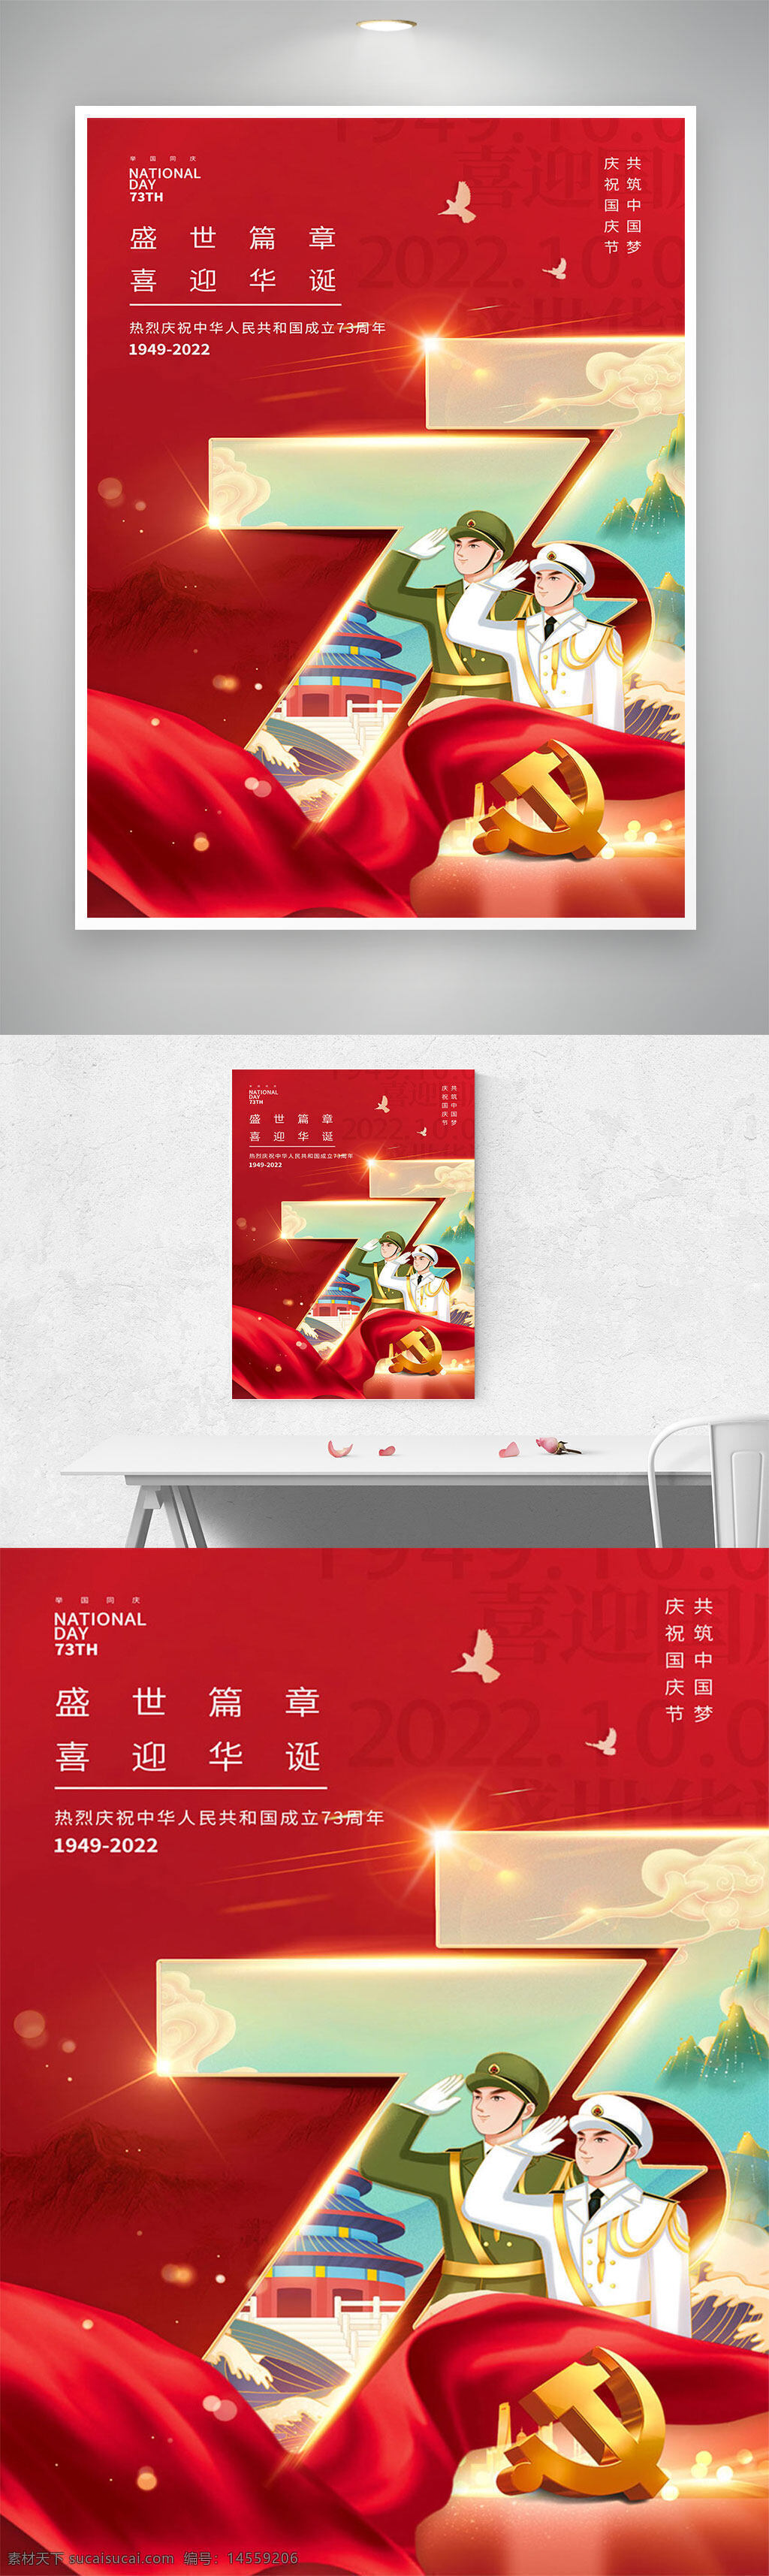 国庆节展板 盛世篇章 喜迎华诞 海报73周年 国庆